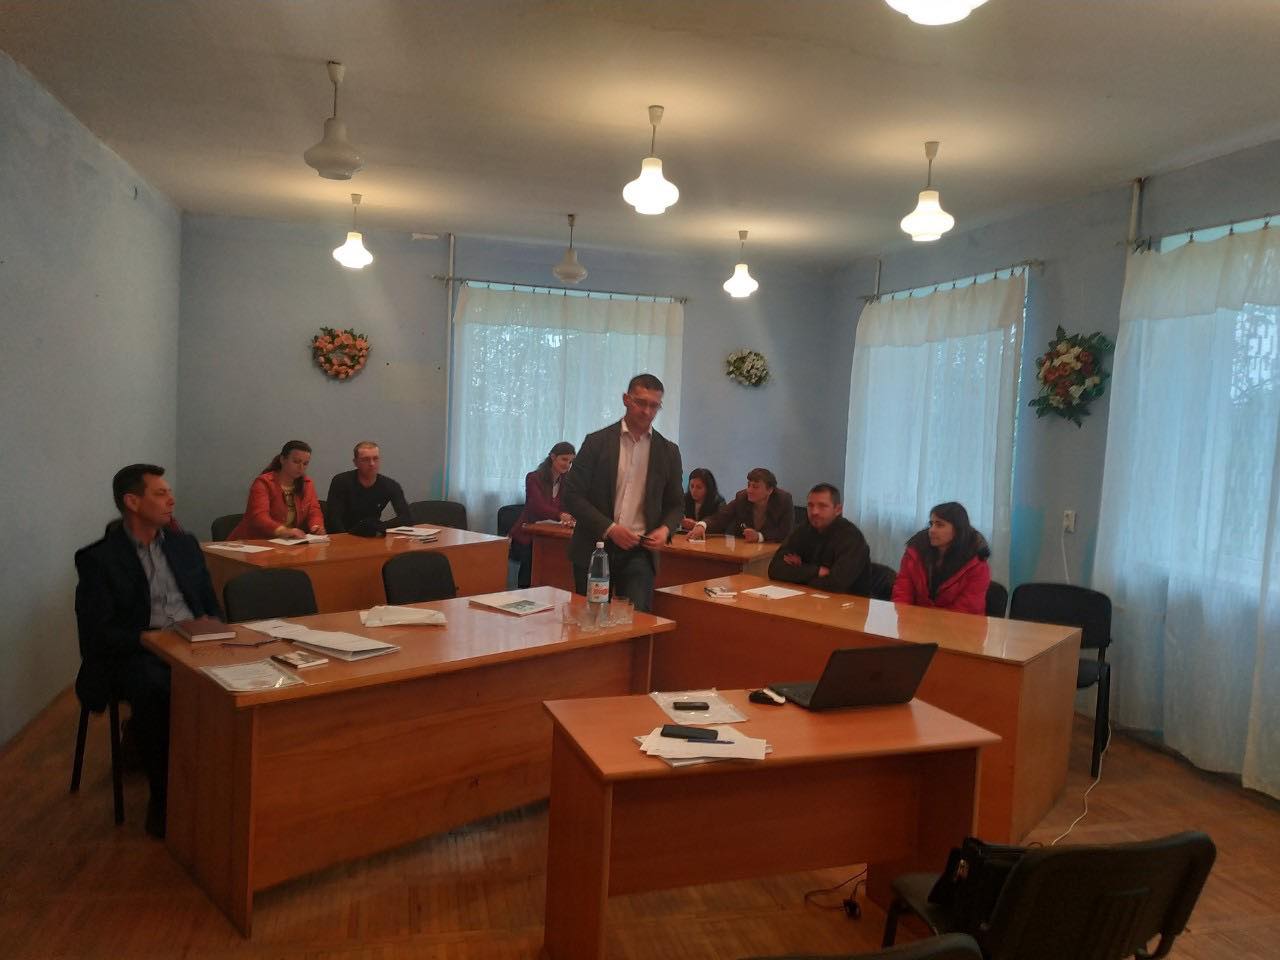 В селі Пацканьово на Ужгородщині відбувся семінар «Розвиток сільських територій», участь в якому взяли представники сіл Кібляри та Пацканьово: фермери, працівники сільрад, депутати та інші.